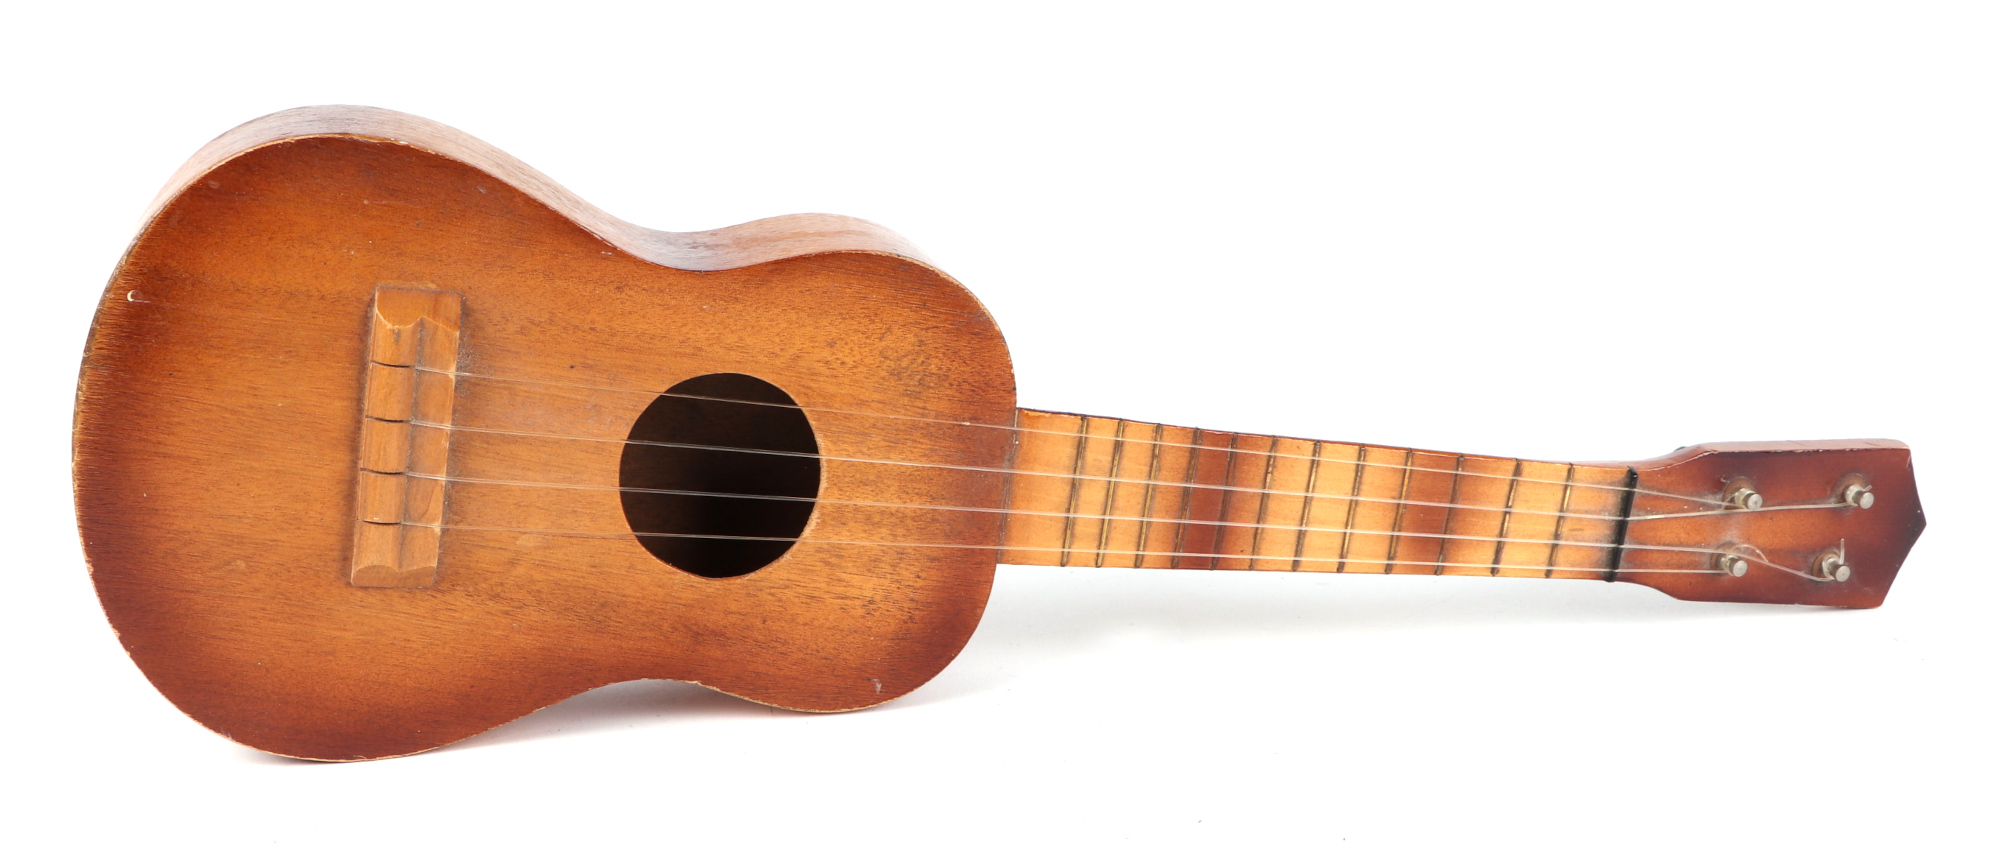 A Swanee banjo ukulele, cased, 53cm long, with modern guitar shaped ukulele (2). - Image 5 of 8